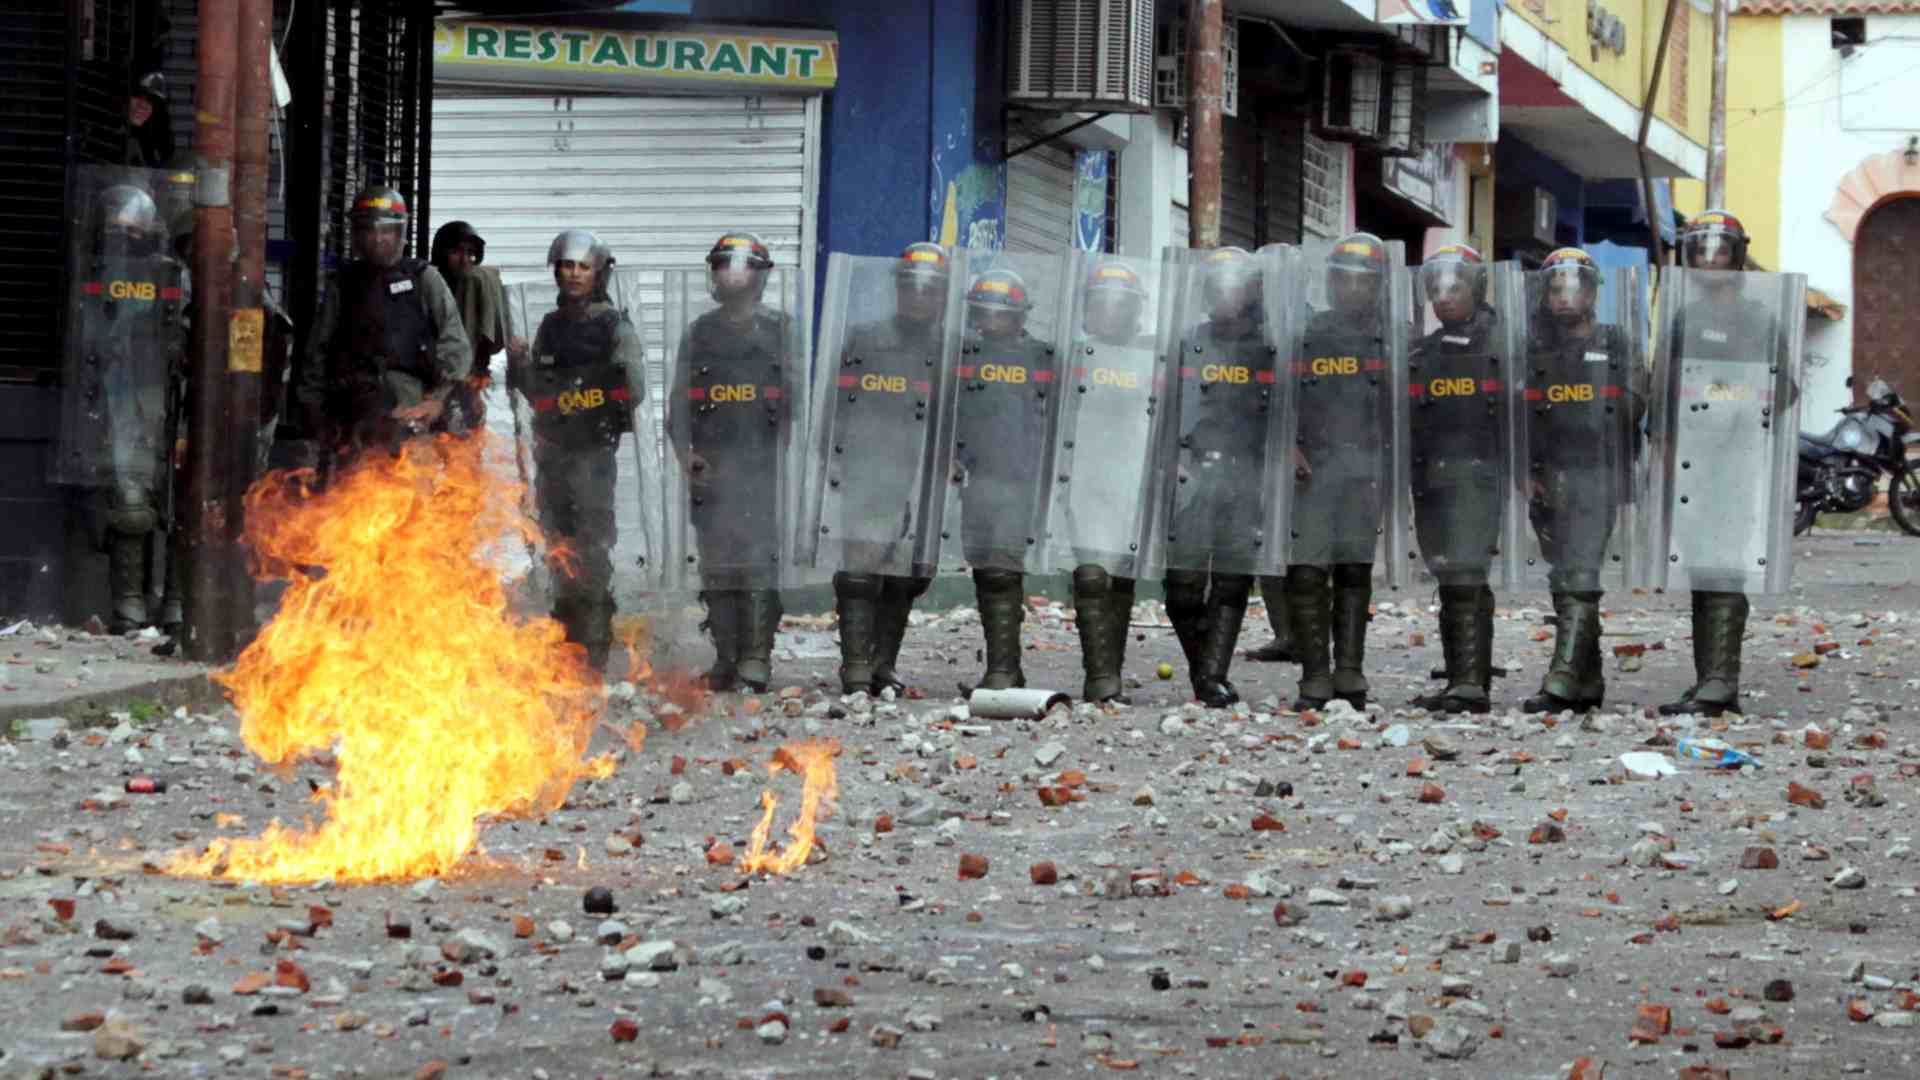 Al menos 26 personas han muerto en las manifestaciones en Venezuela desde el lunes